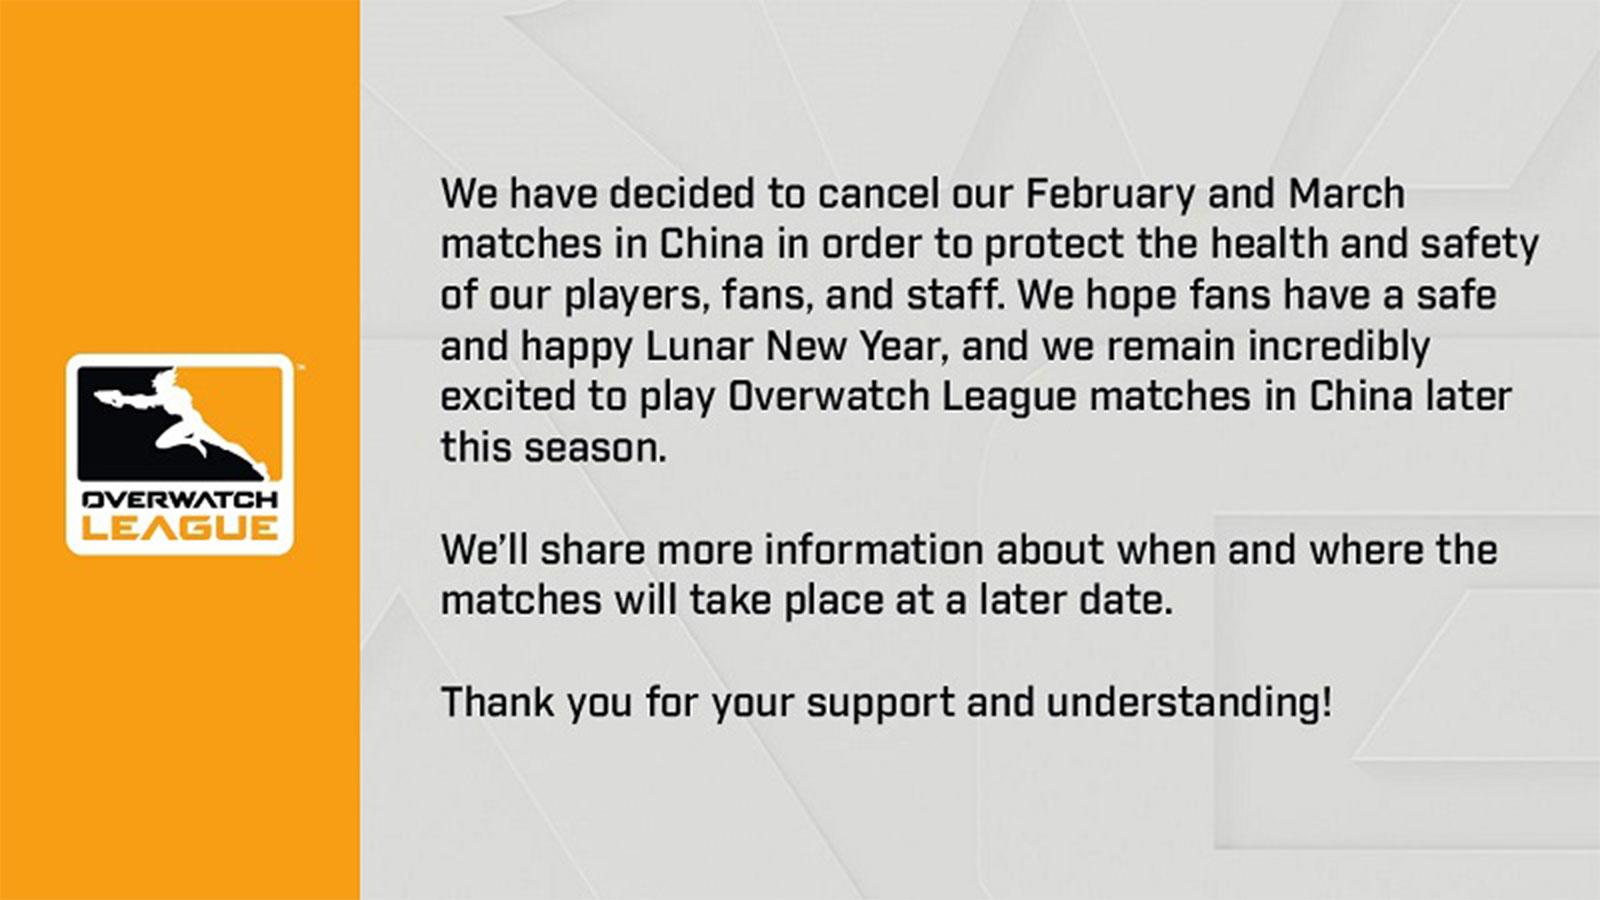 En raison du Coronavirus, les matchs de l'Overwatch League en Chine sont annulés